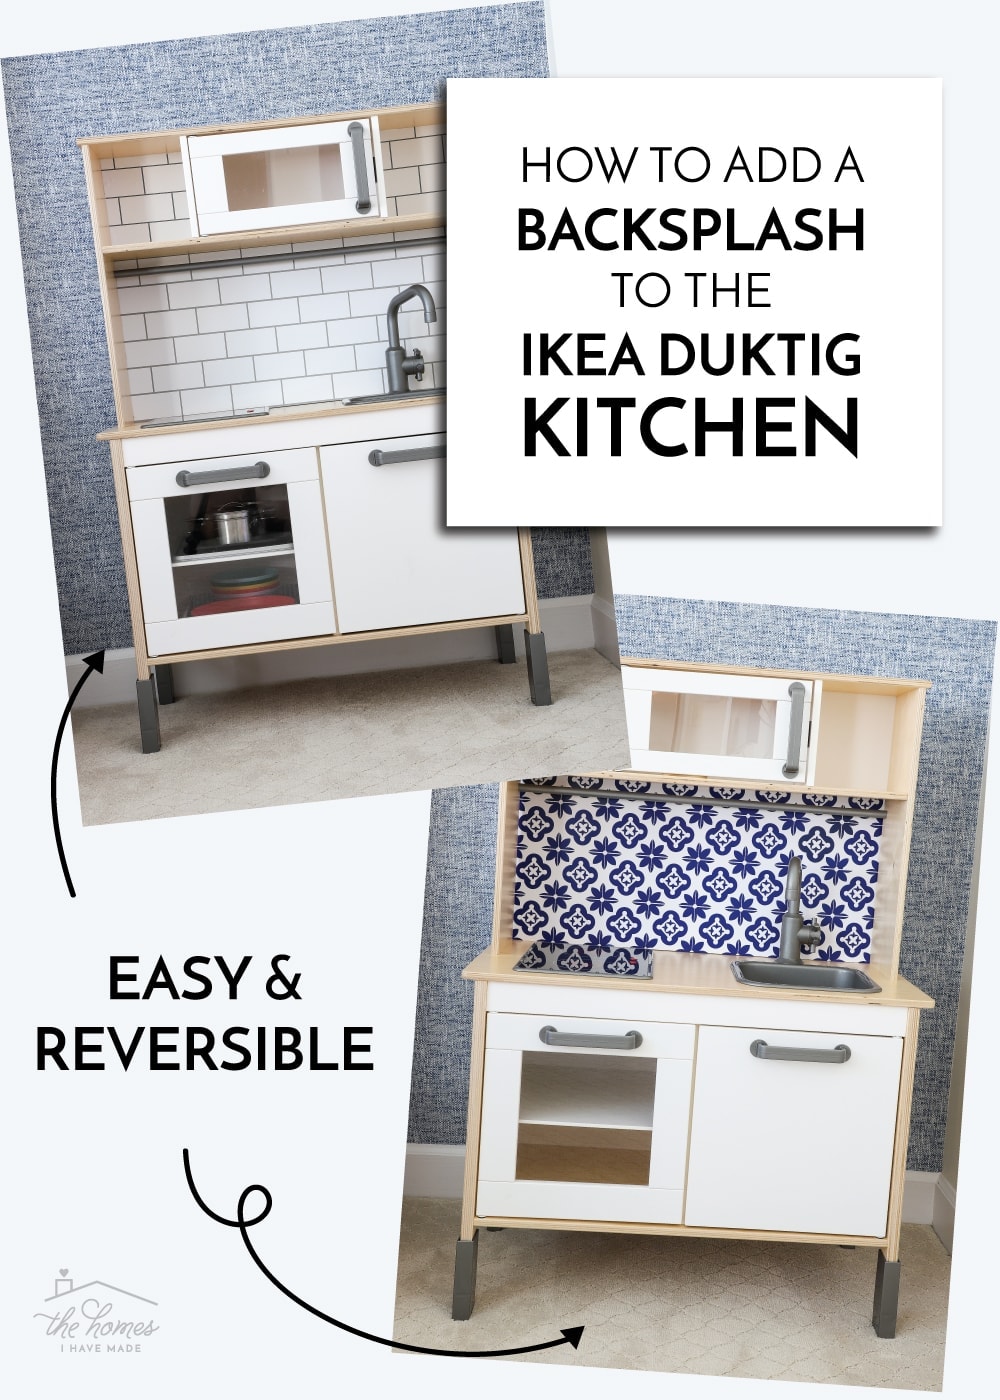 How to Put a Backsplash on the IKEA DUKTIG Play Kitchen - The Homes I